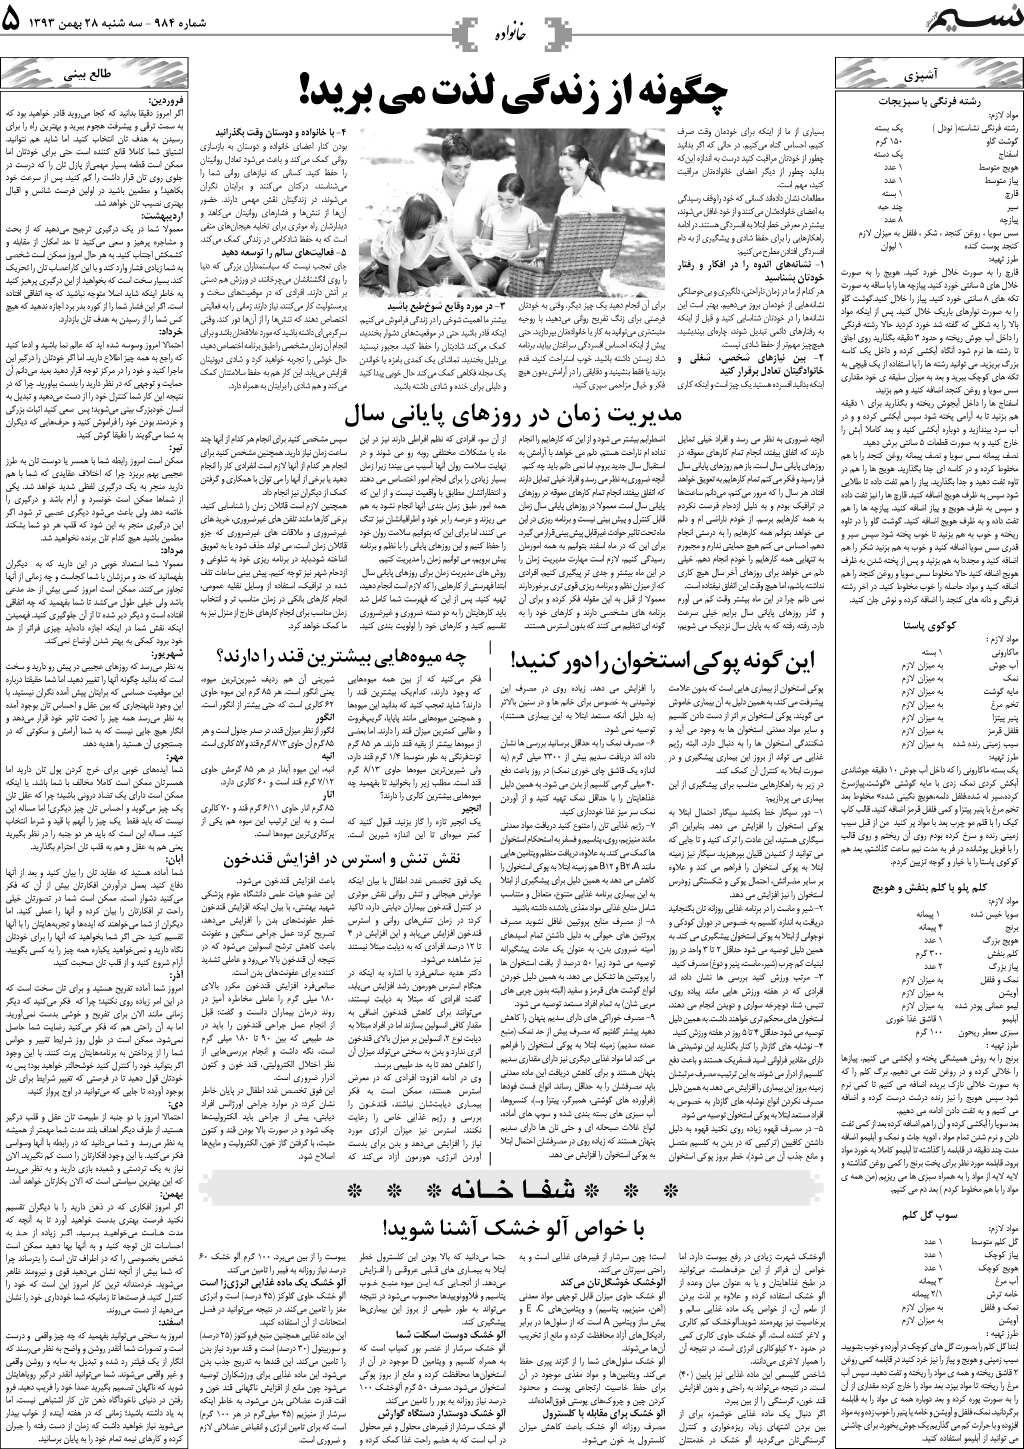 صفحه خانواده روزنامه نسیم شماره 984